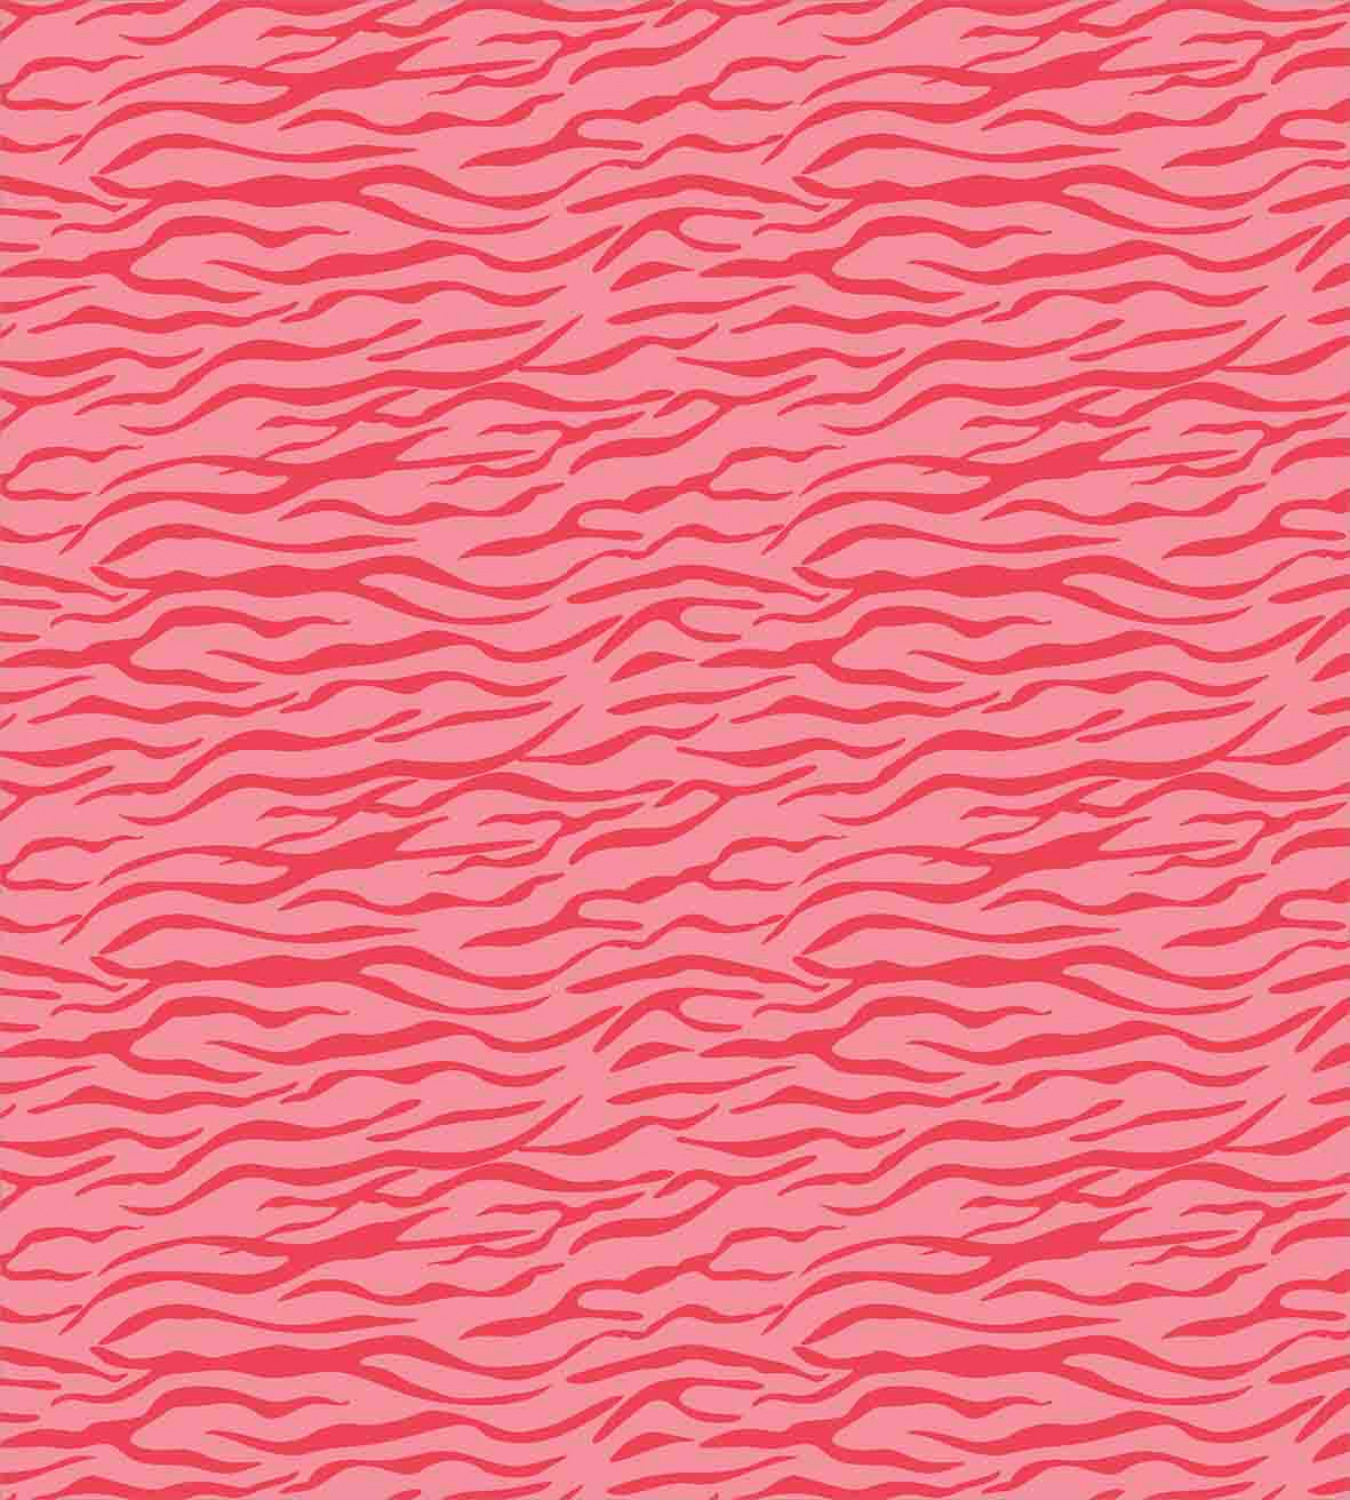 pink zebra bed sheets